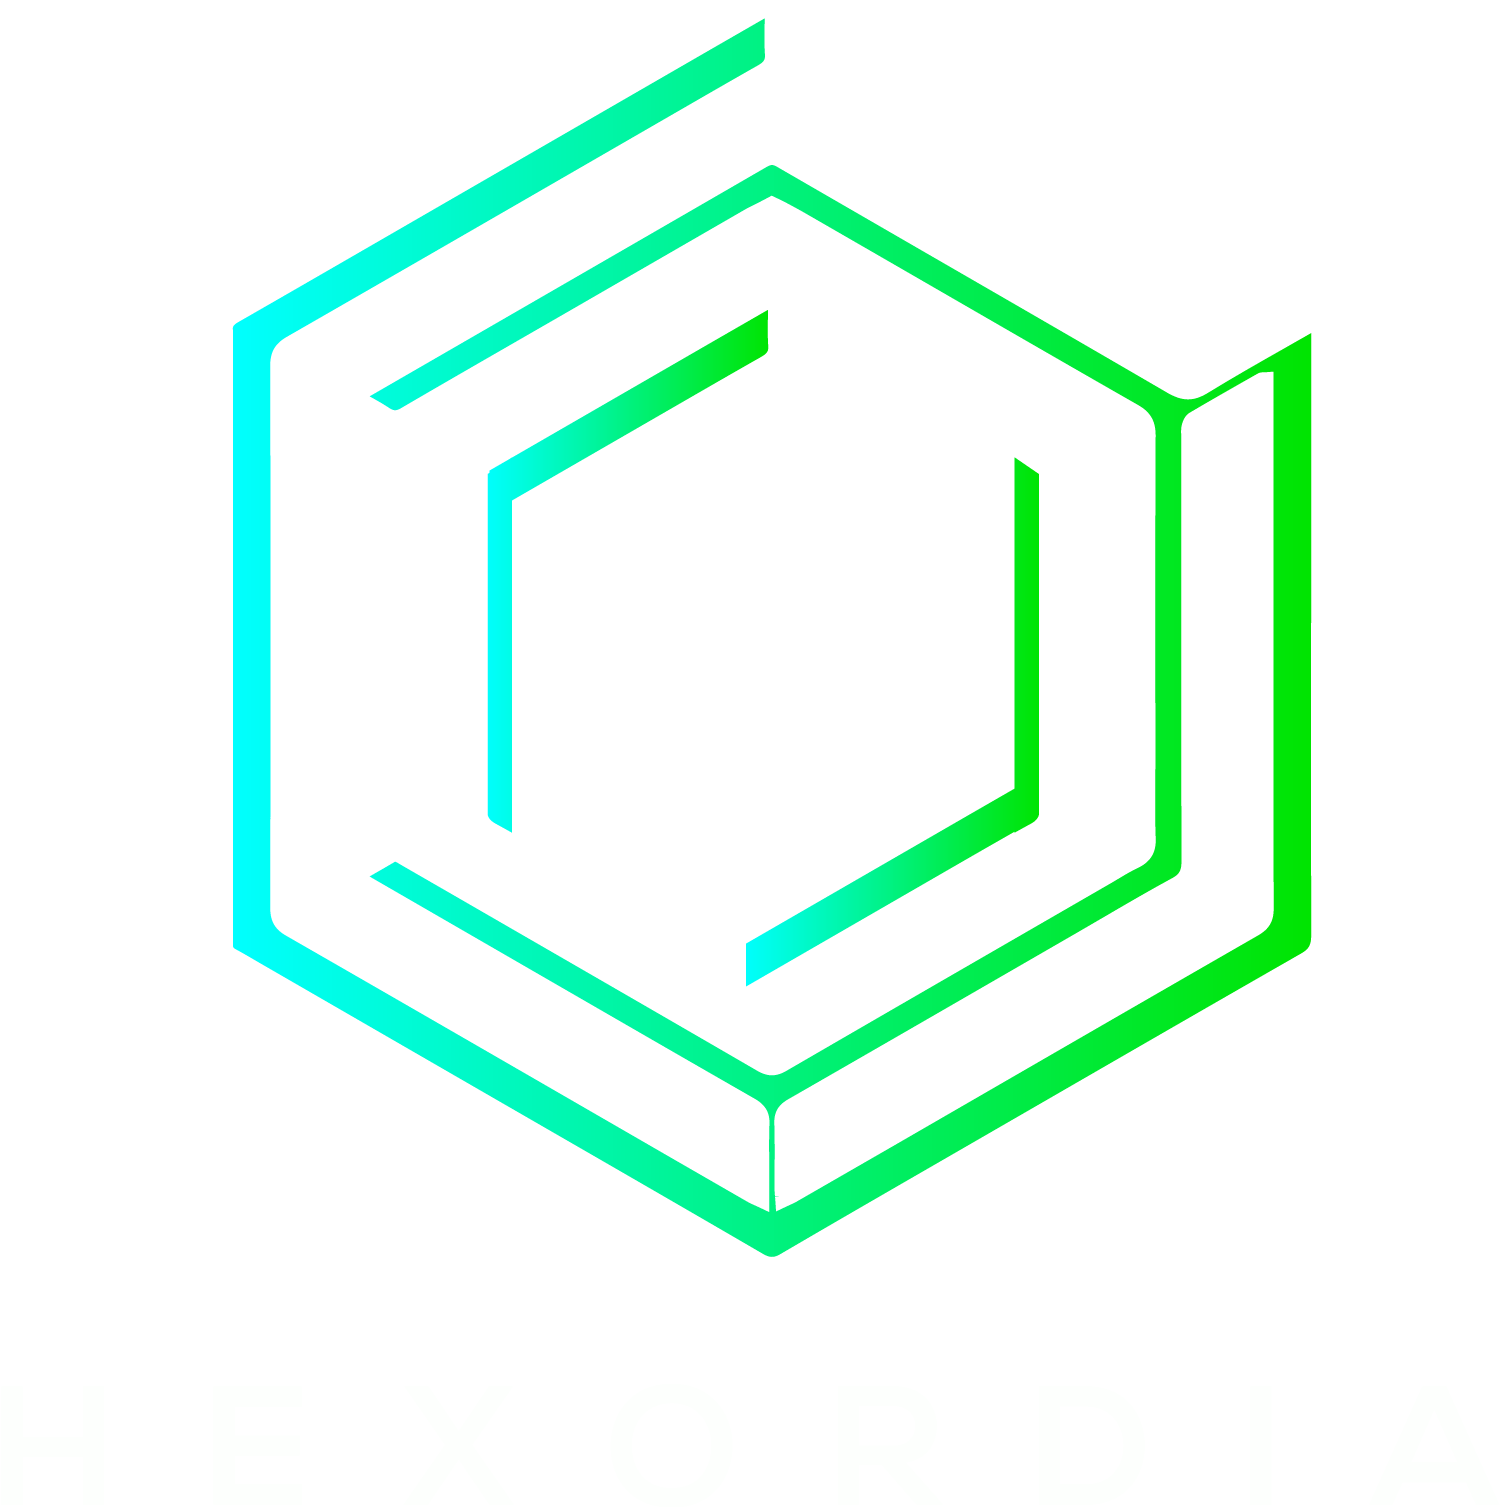 Hexordia